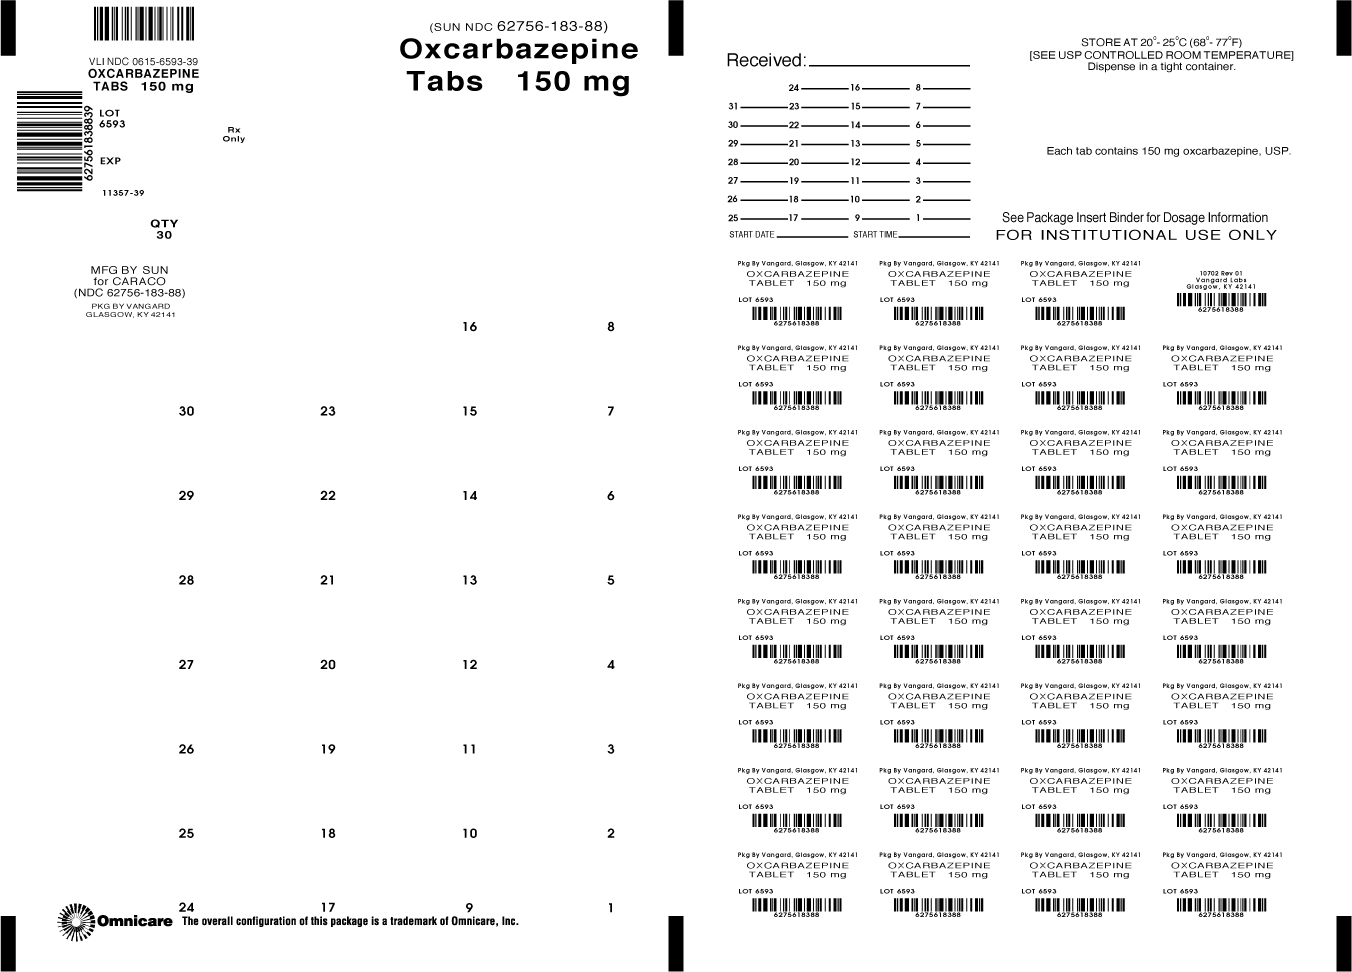 Principal Display Panel-Oxcarbazepine Tabs 150mg